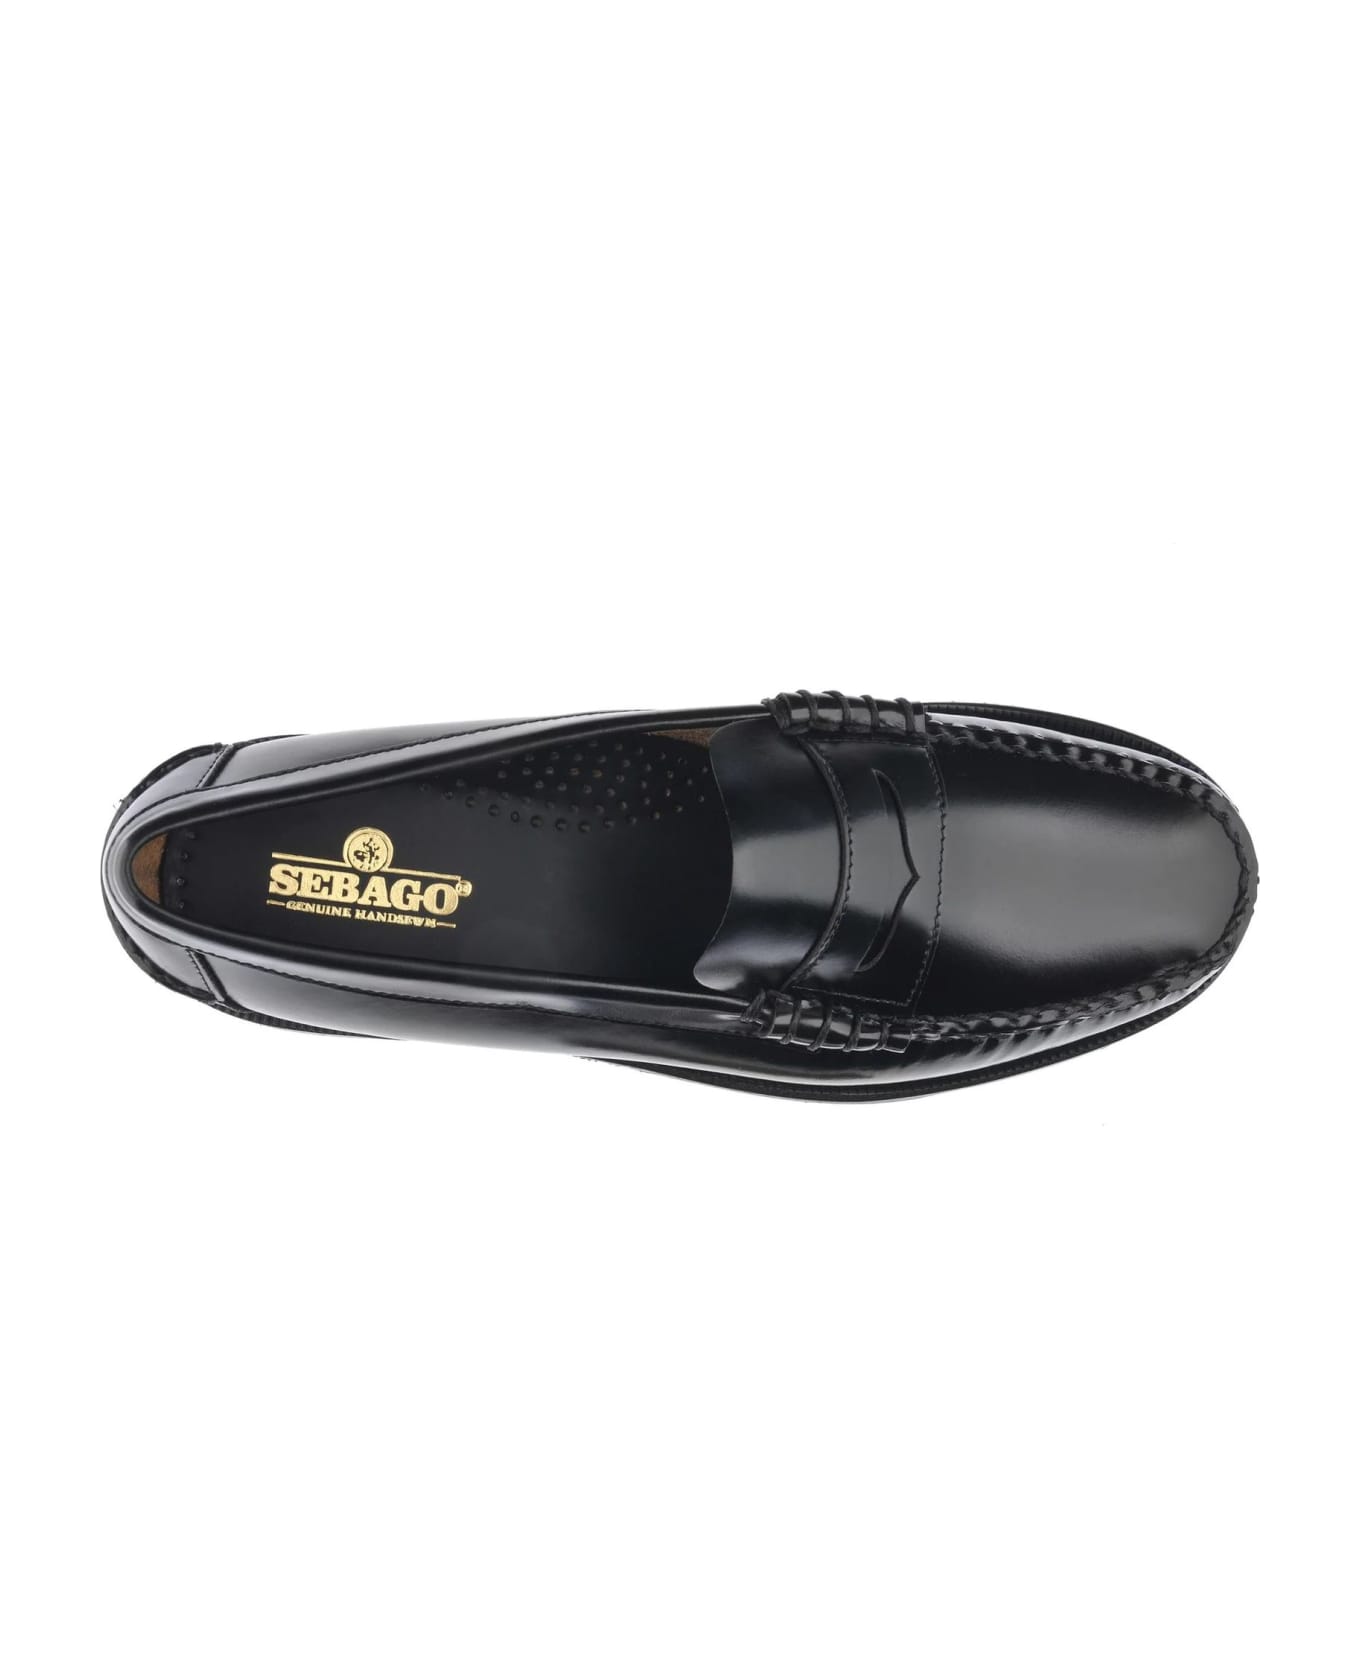 Sebago Black Leather Loafers - Black